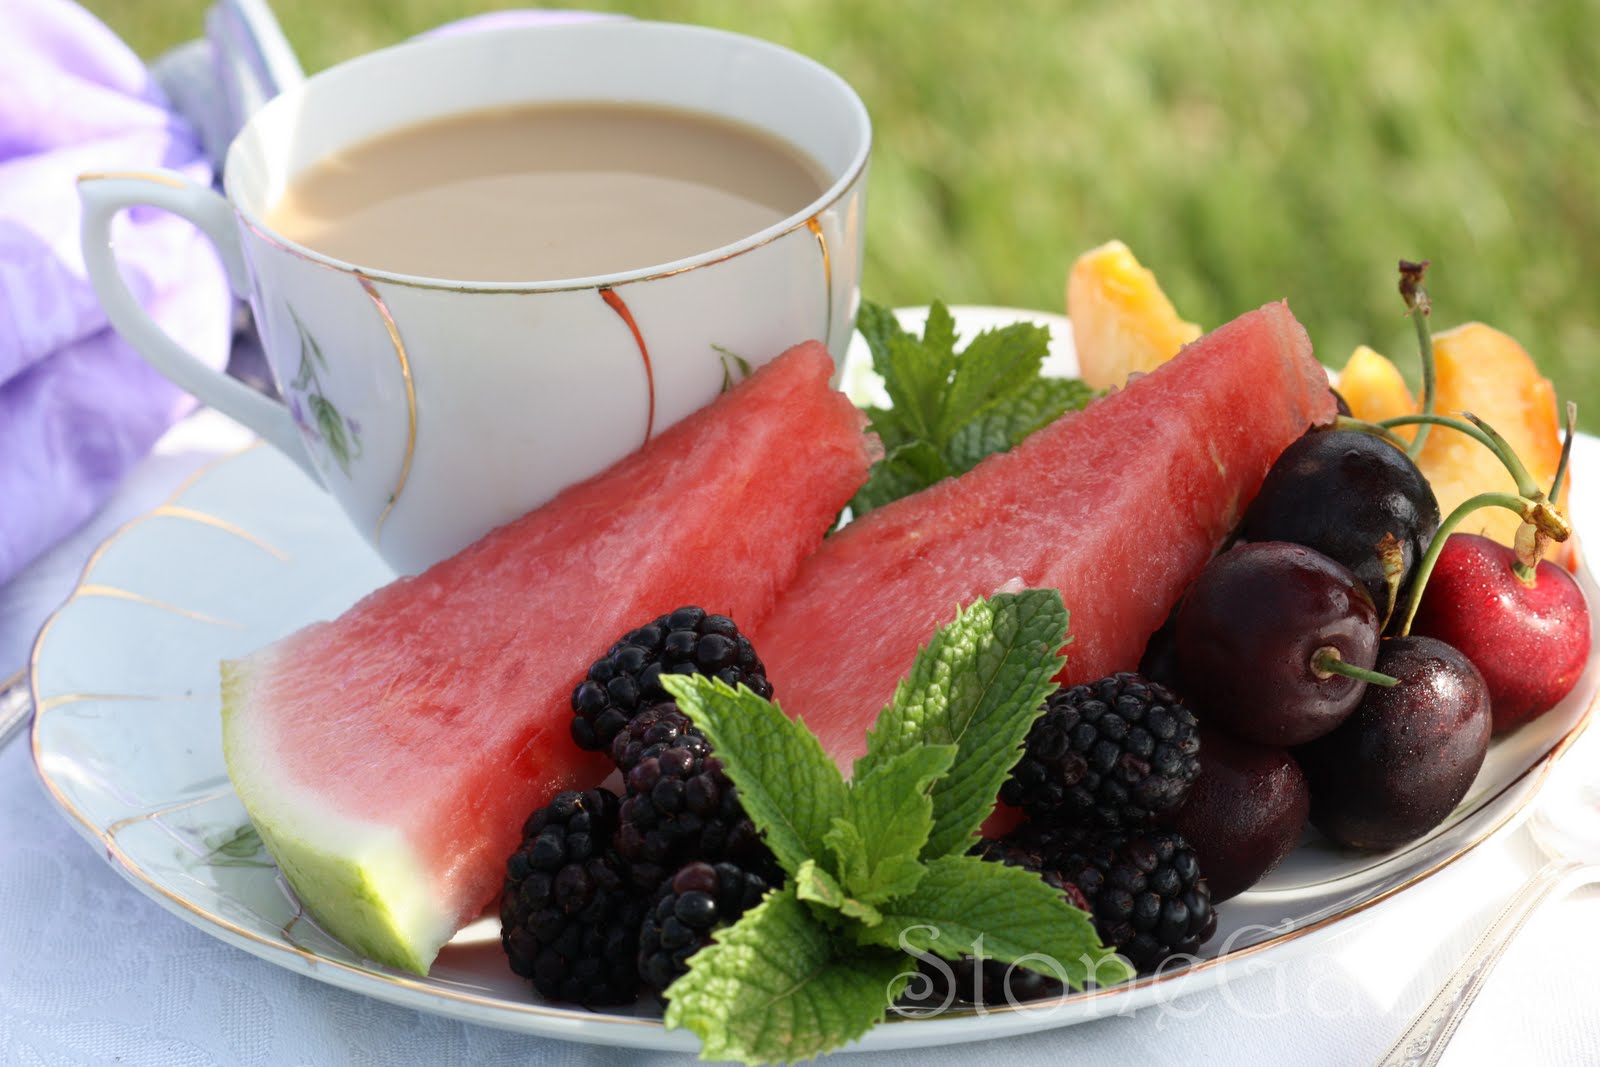 Фруктового утра. Фруктовый чай. Фруктово-ягодный чай. Красивый завтрак с фруктами. Чай с ягодами.